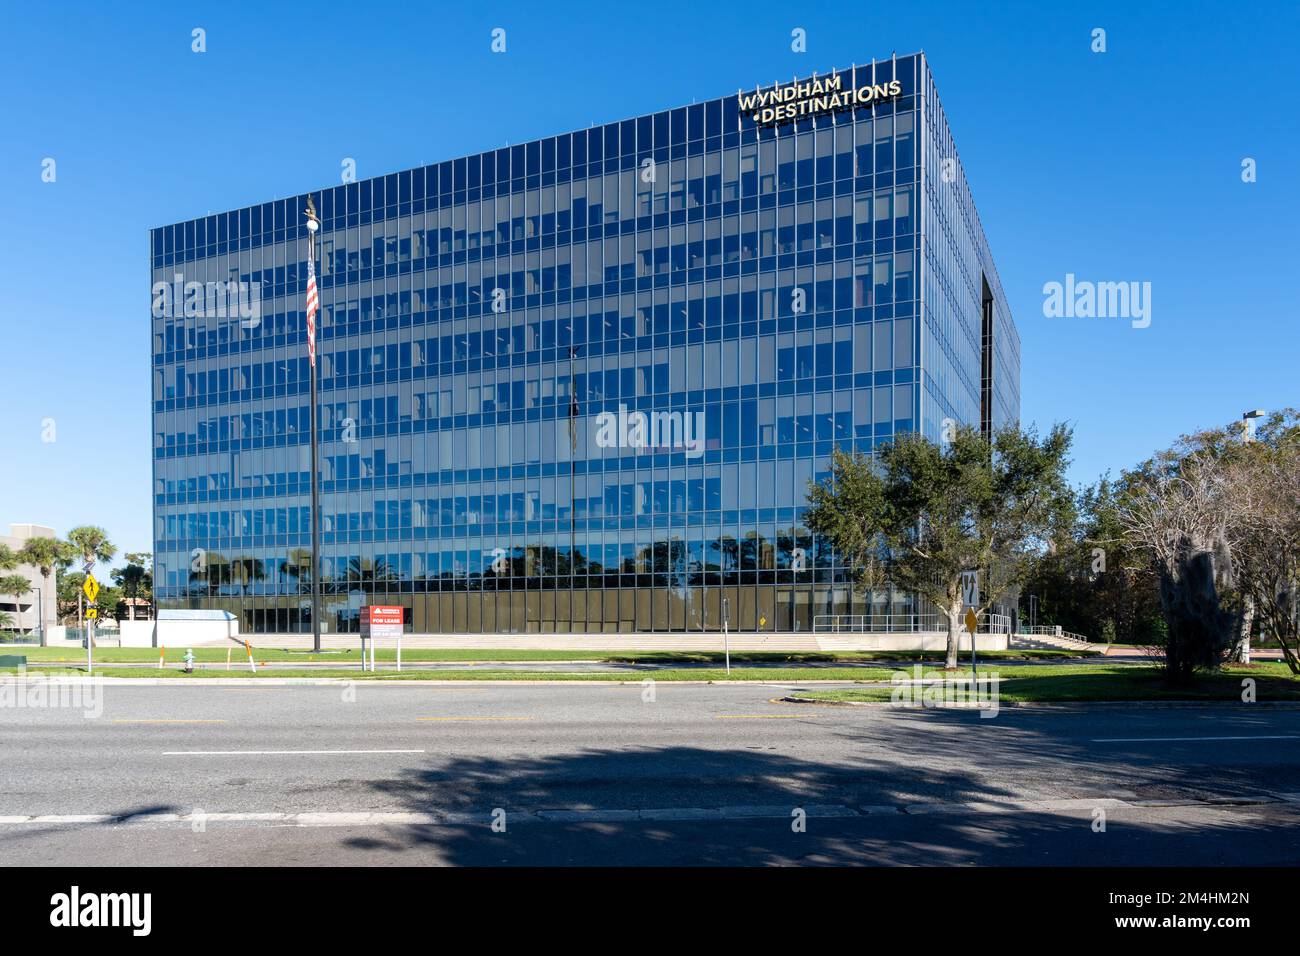 Orlando, FL, USA - 6 janvier 2022: Wyndham destinations siège à Orlando, FL, USA Banque D'Images